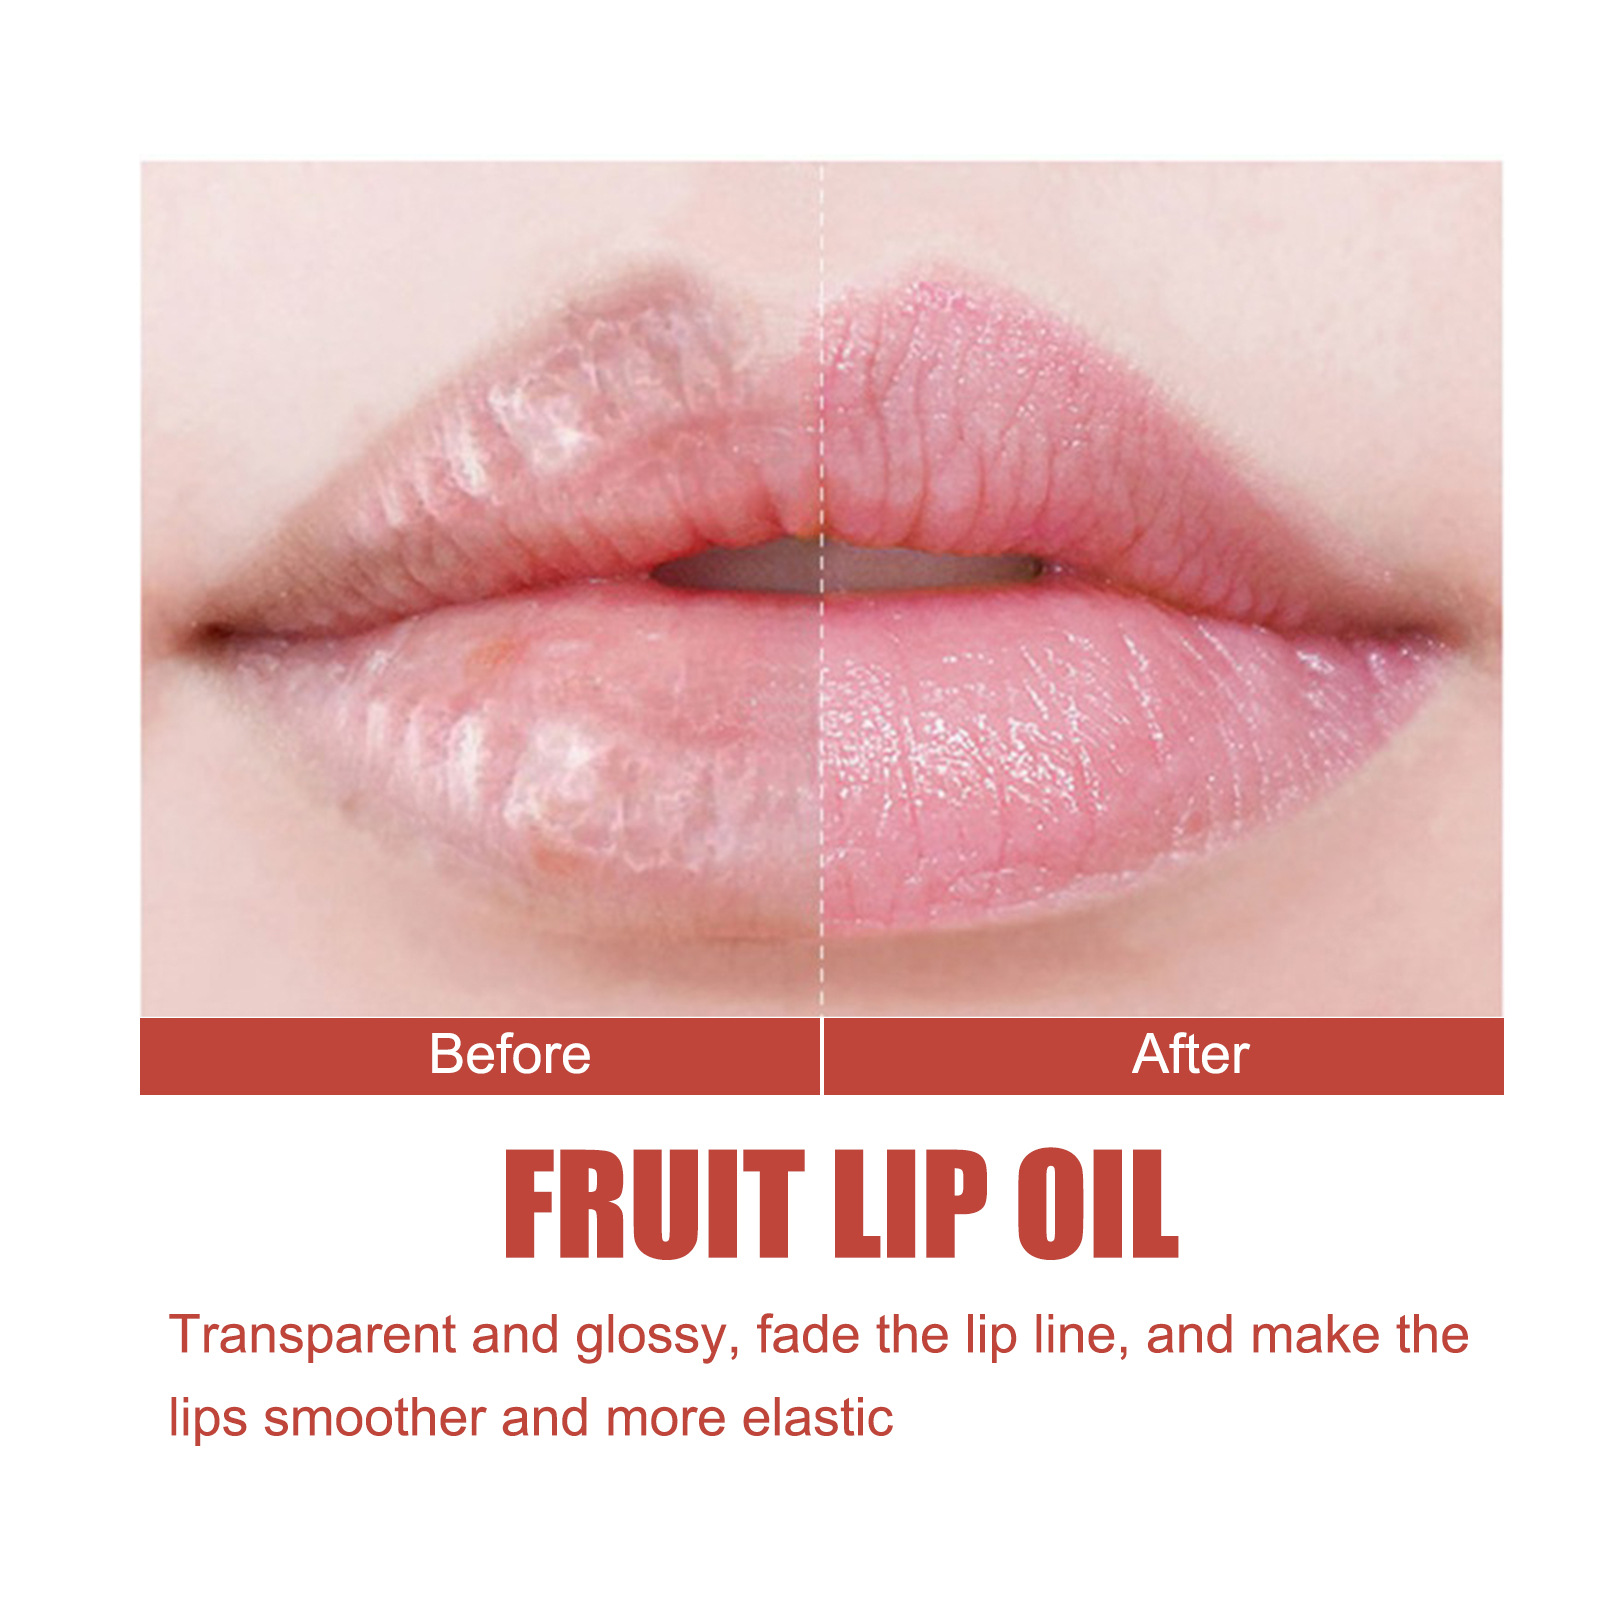 Ouhoe Lip Oil Fade Lip Lines Anti-Chapping Care Lips Moisture Replenishment Lip Plump Care Lip Gloss